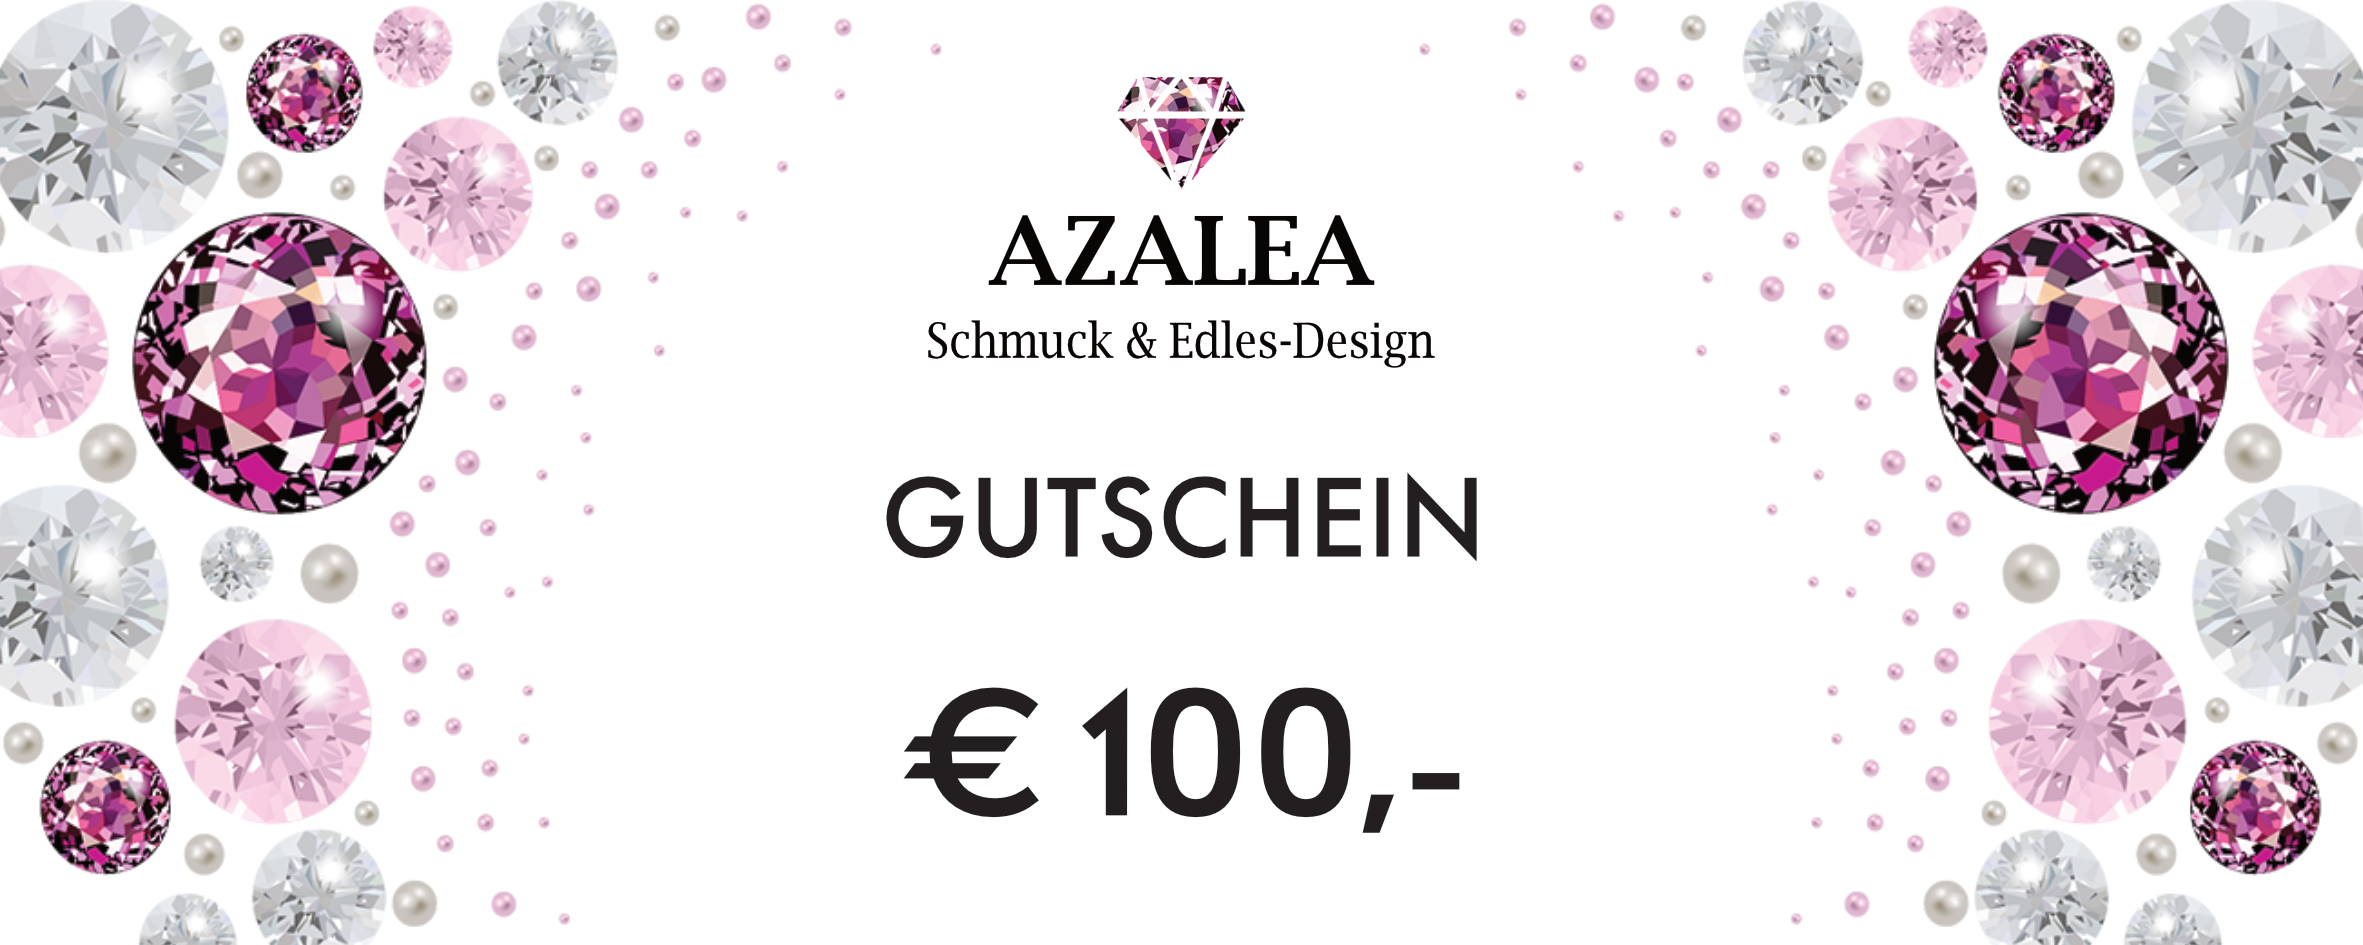 Azalea Wien - Schmuck und Edelsteine - Gutschein